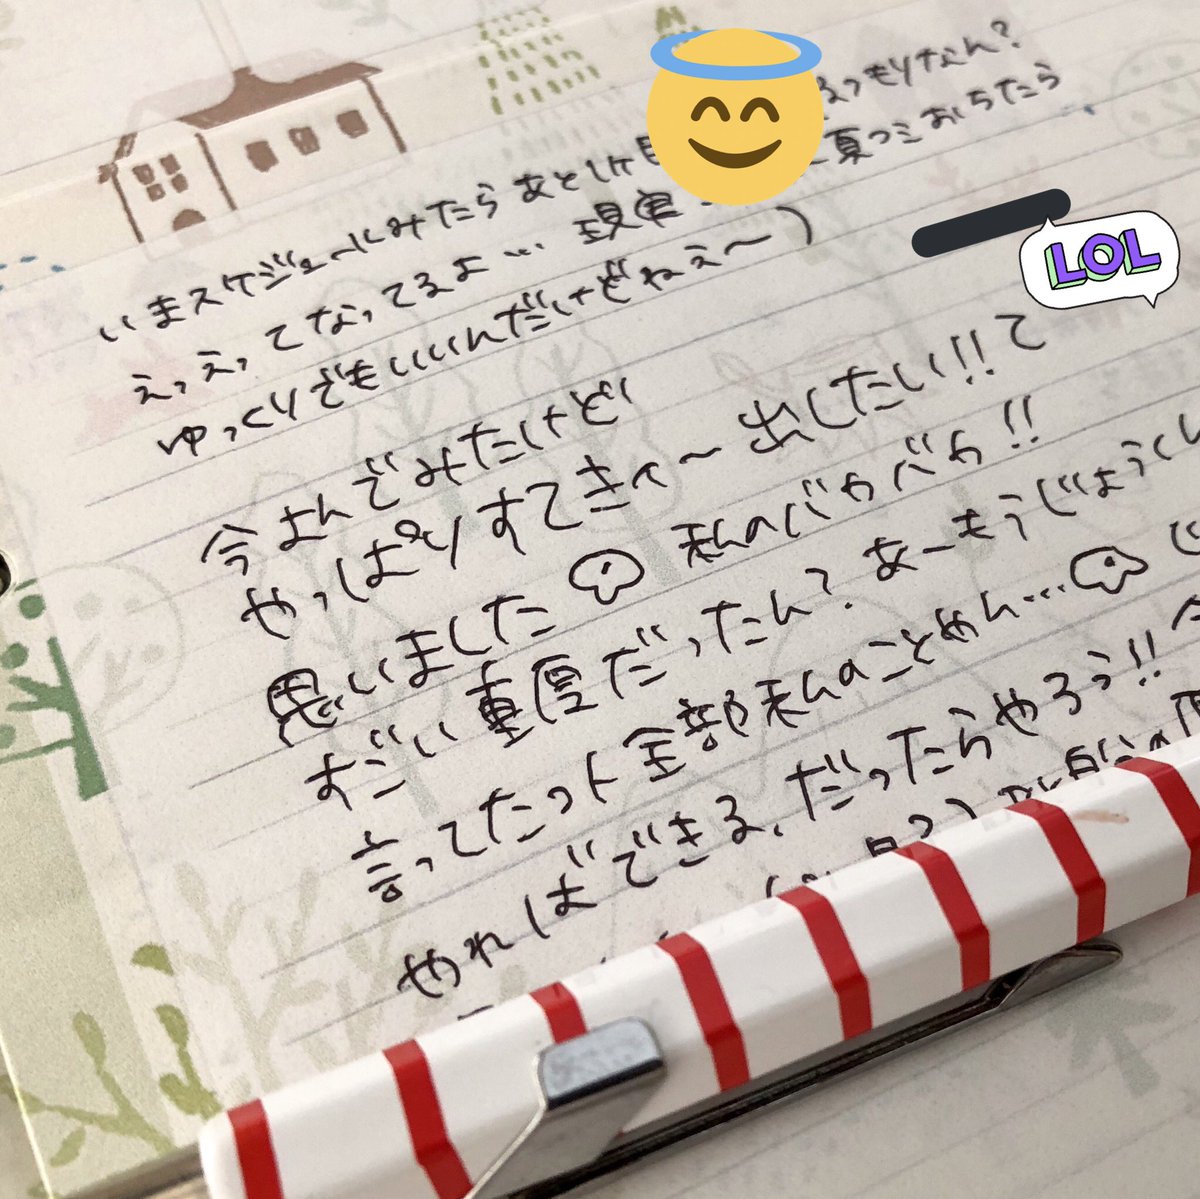 Orihika 手紙 手書きか Sns Dtpに移る中での栄枯盛衰ですかね 一方で 顔文字が手書きされたり Kpopの振り付けに影響したり T Co Yebb3uzhfz といった変化も面白いと思います